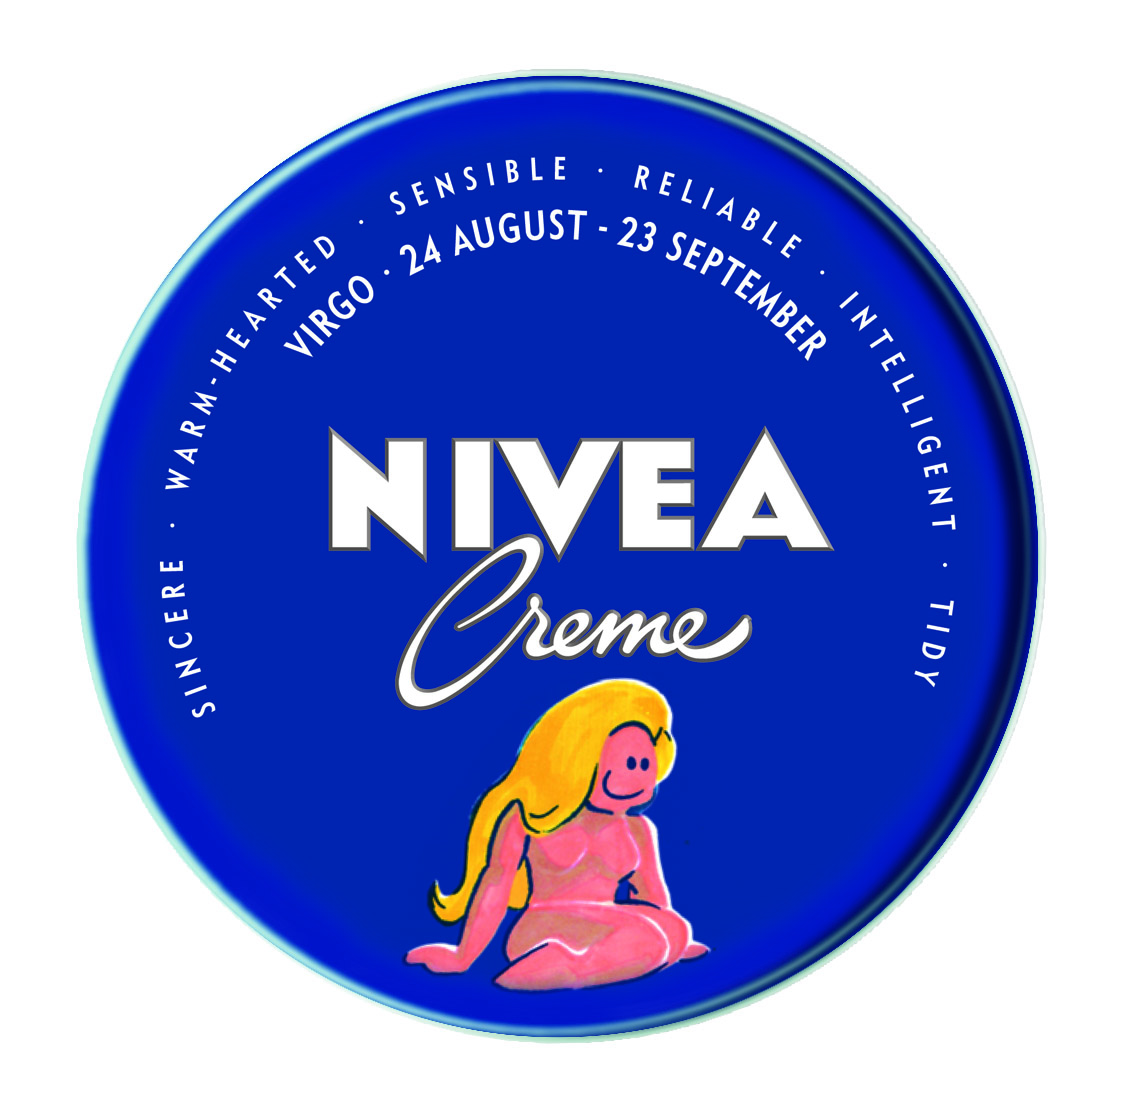 NIVEA Creme Virgo.jpg